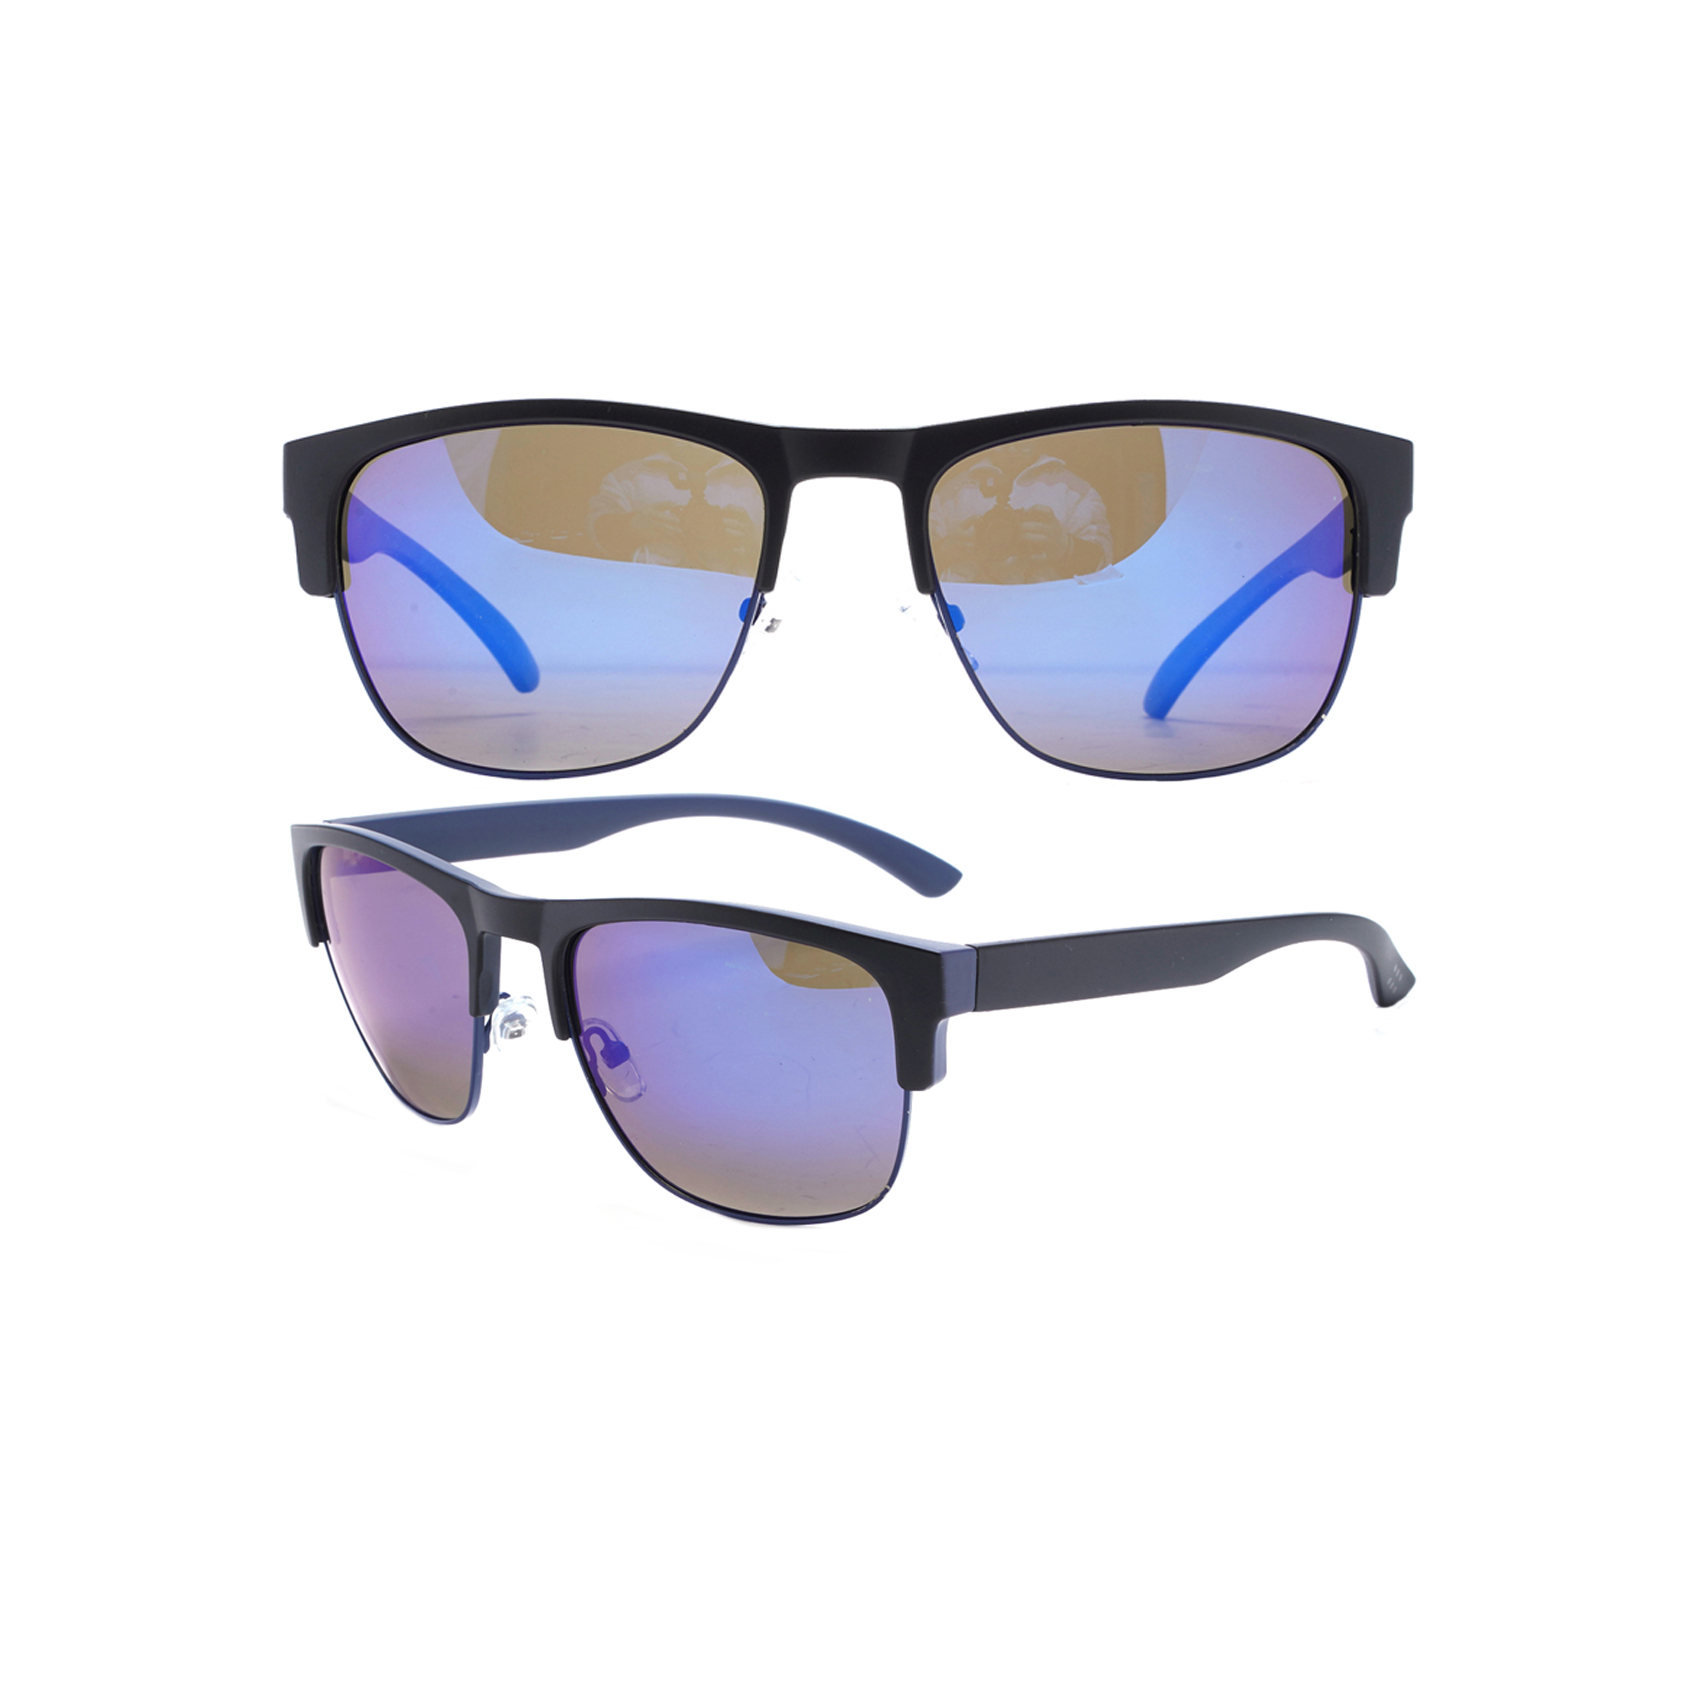 Stylish Black Clubmaster Style Sunglasses Polarized Wholesale Womens Sunglasses